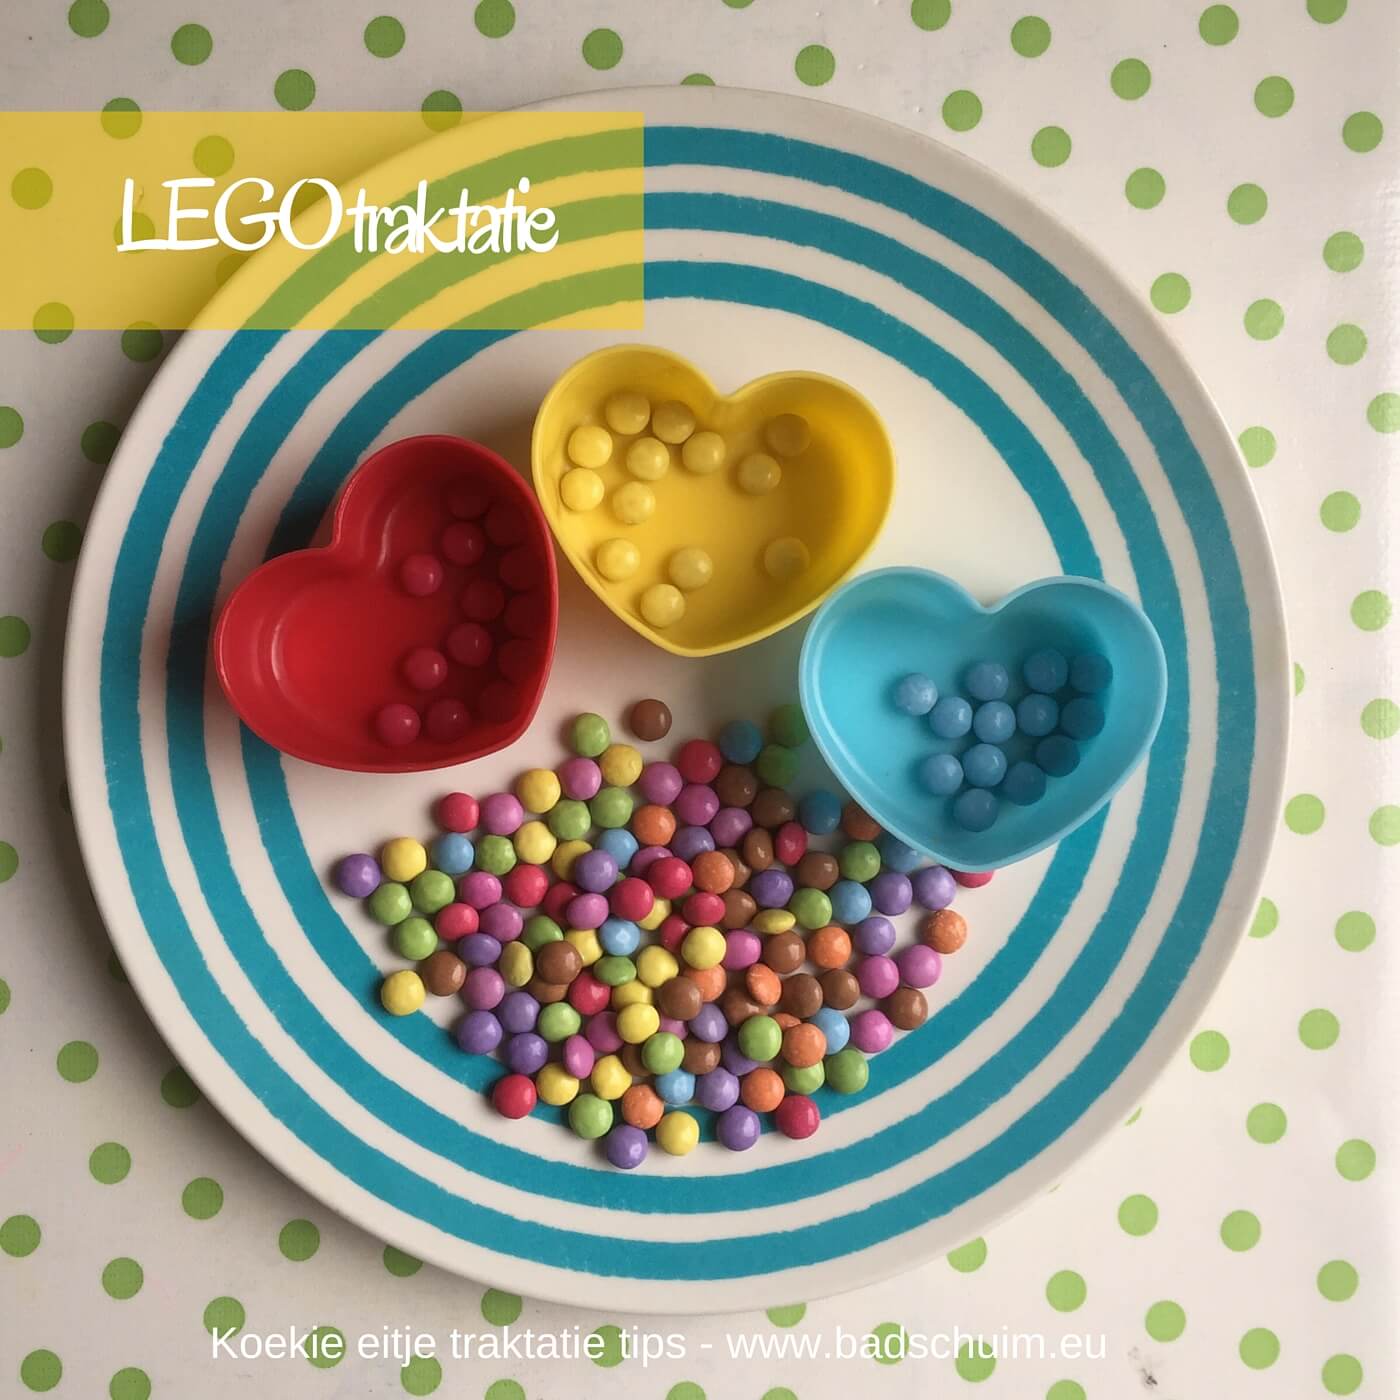 Heb jij een LEGO fan in huis?! Maak dan deze LEGO blokjes traktatie! Nier gezond, maar wel heerlijk zoet en heel leuk om samen te maken! Dat doe je met dit foto stappenplan.